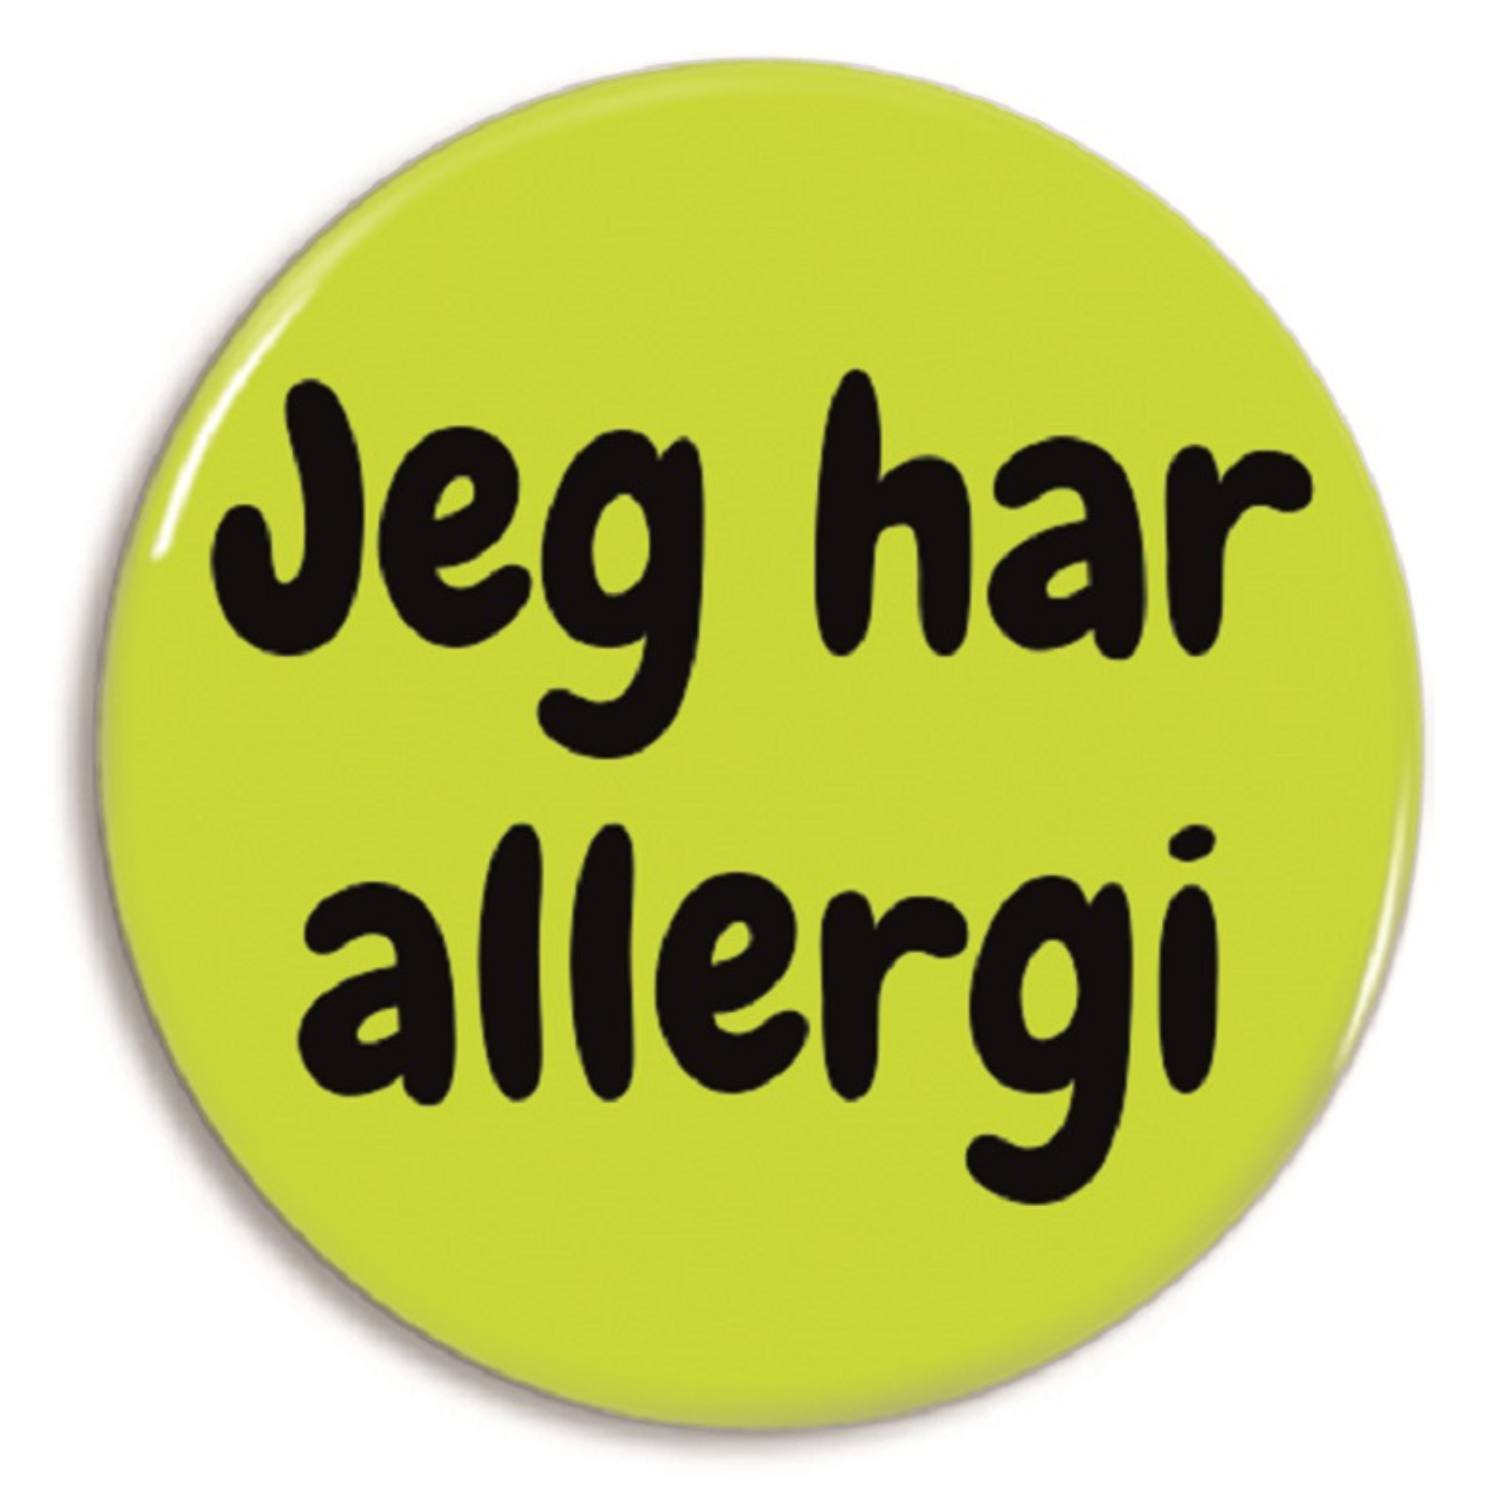 Billede af Badge 'jeg har allergi' til tøjet eller tasken - Badge fra Astma Allergi Shoppen